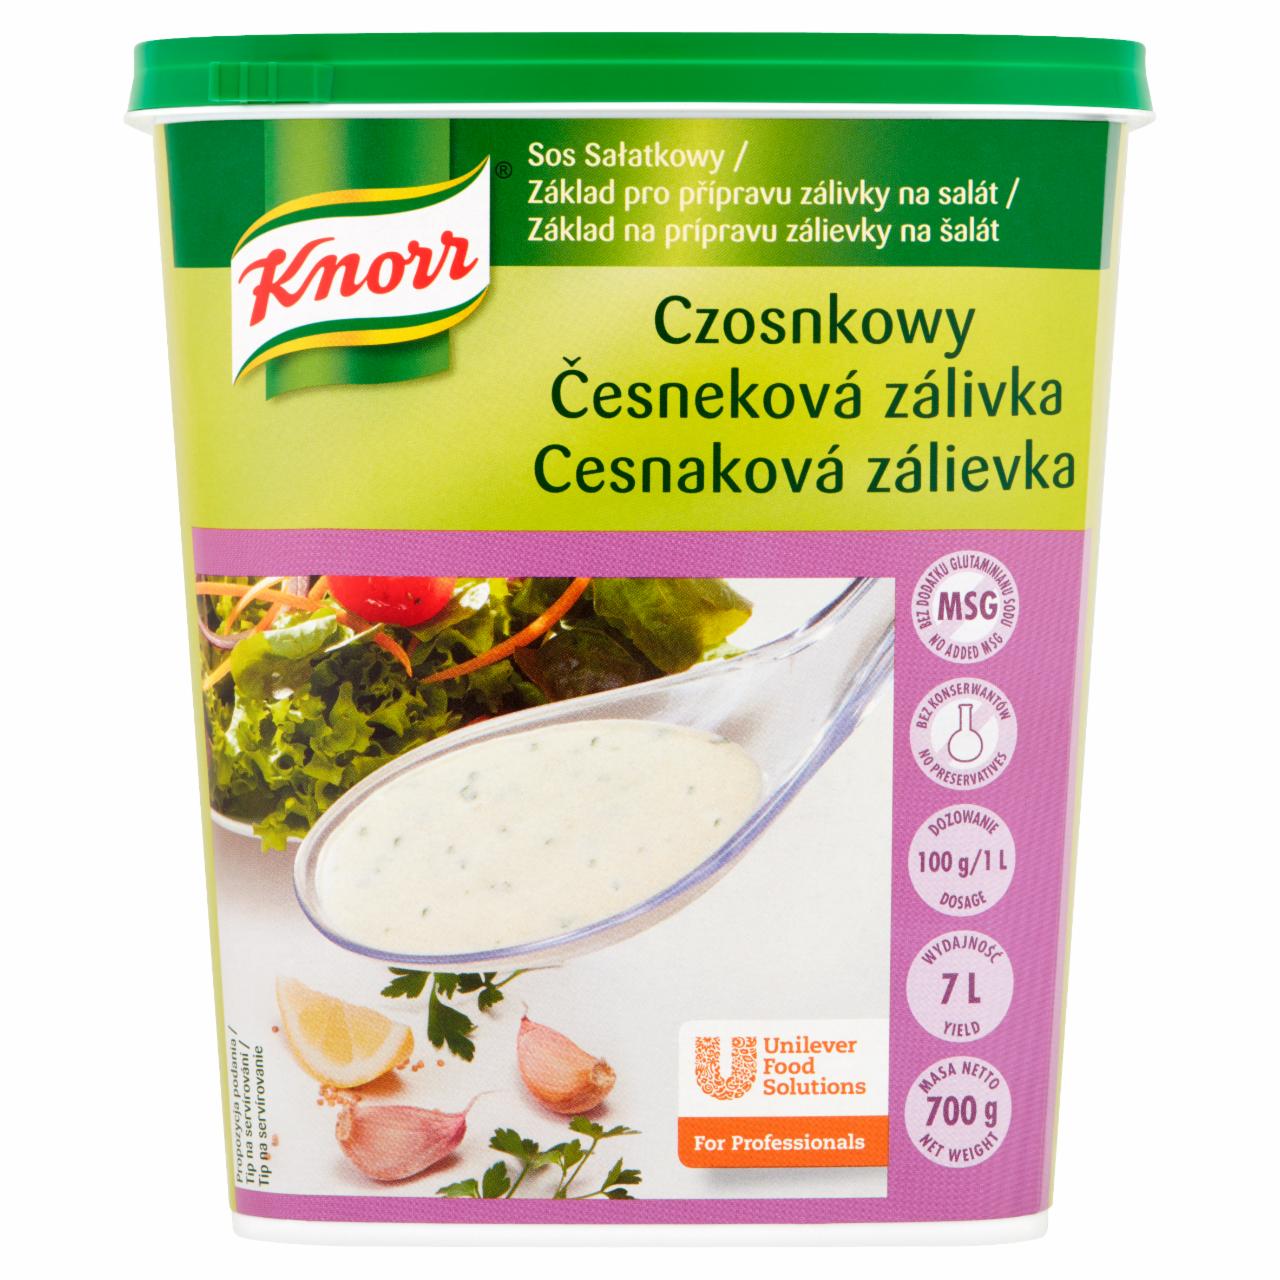 Zdjęcia - Knorr Sos sałatkowy czosnkowy 700 g